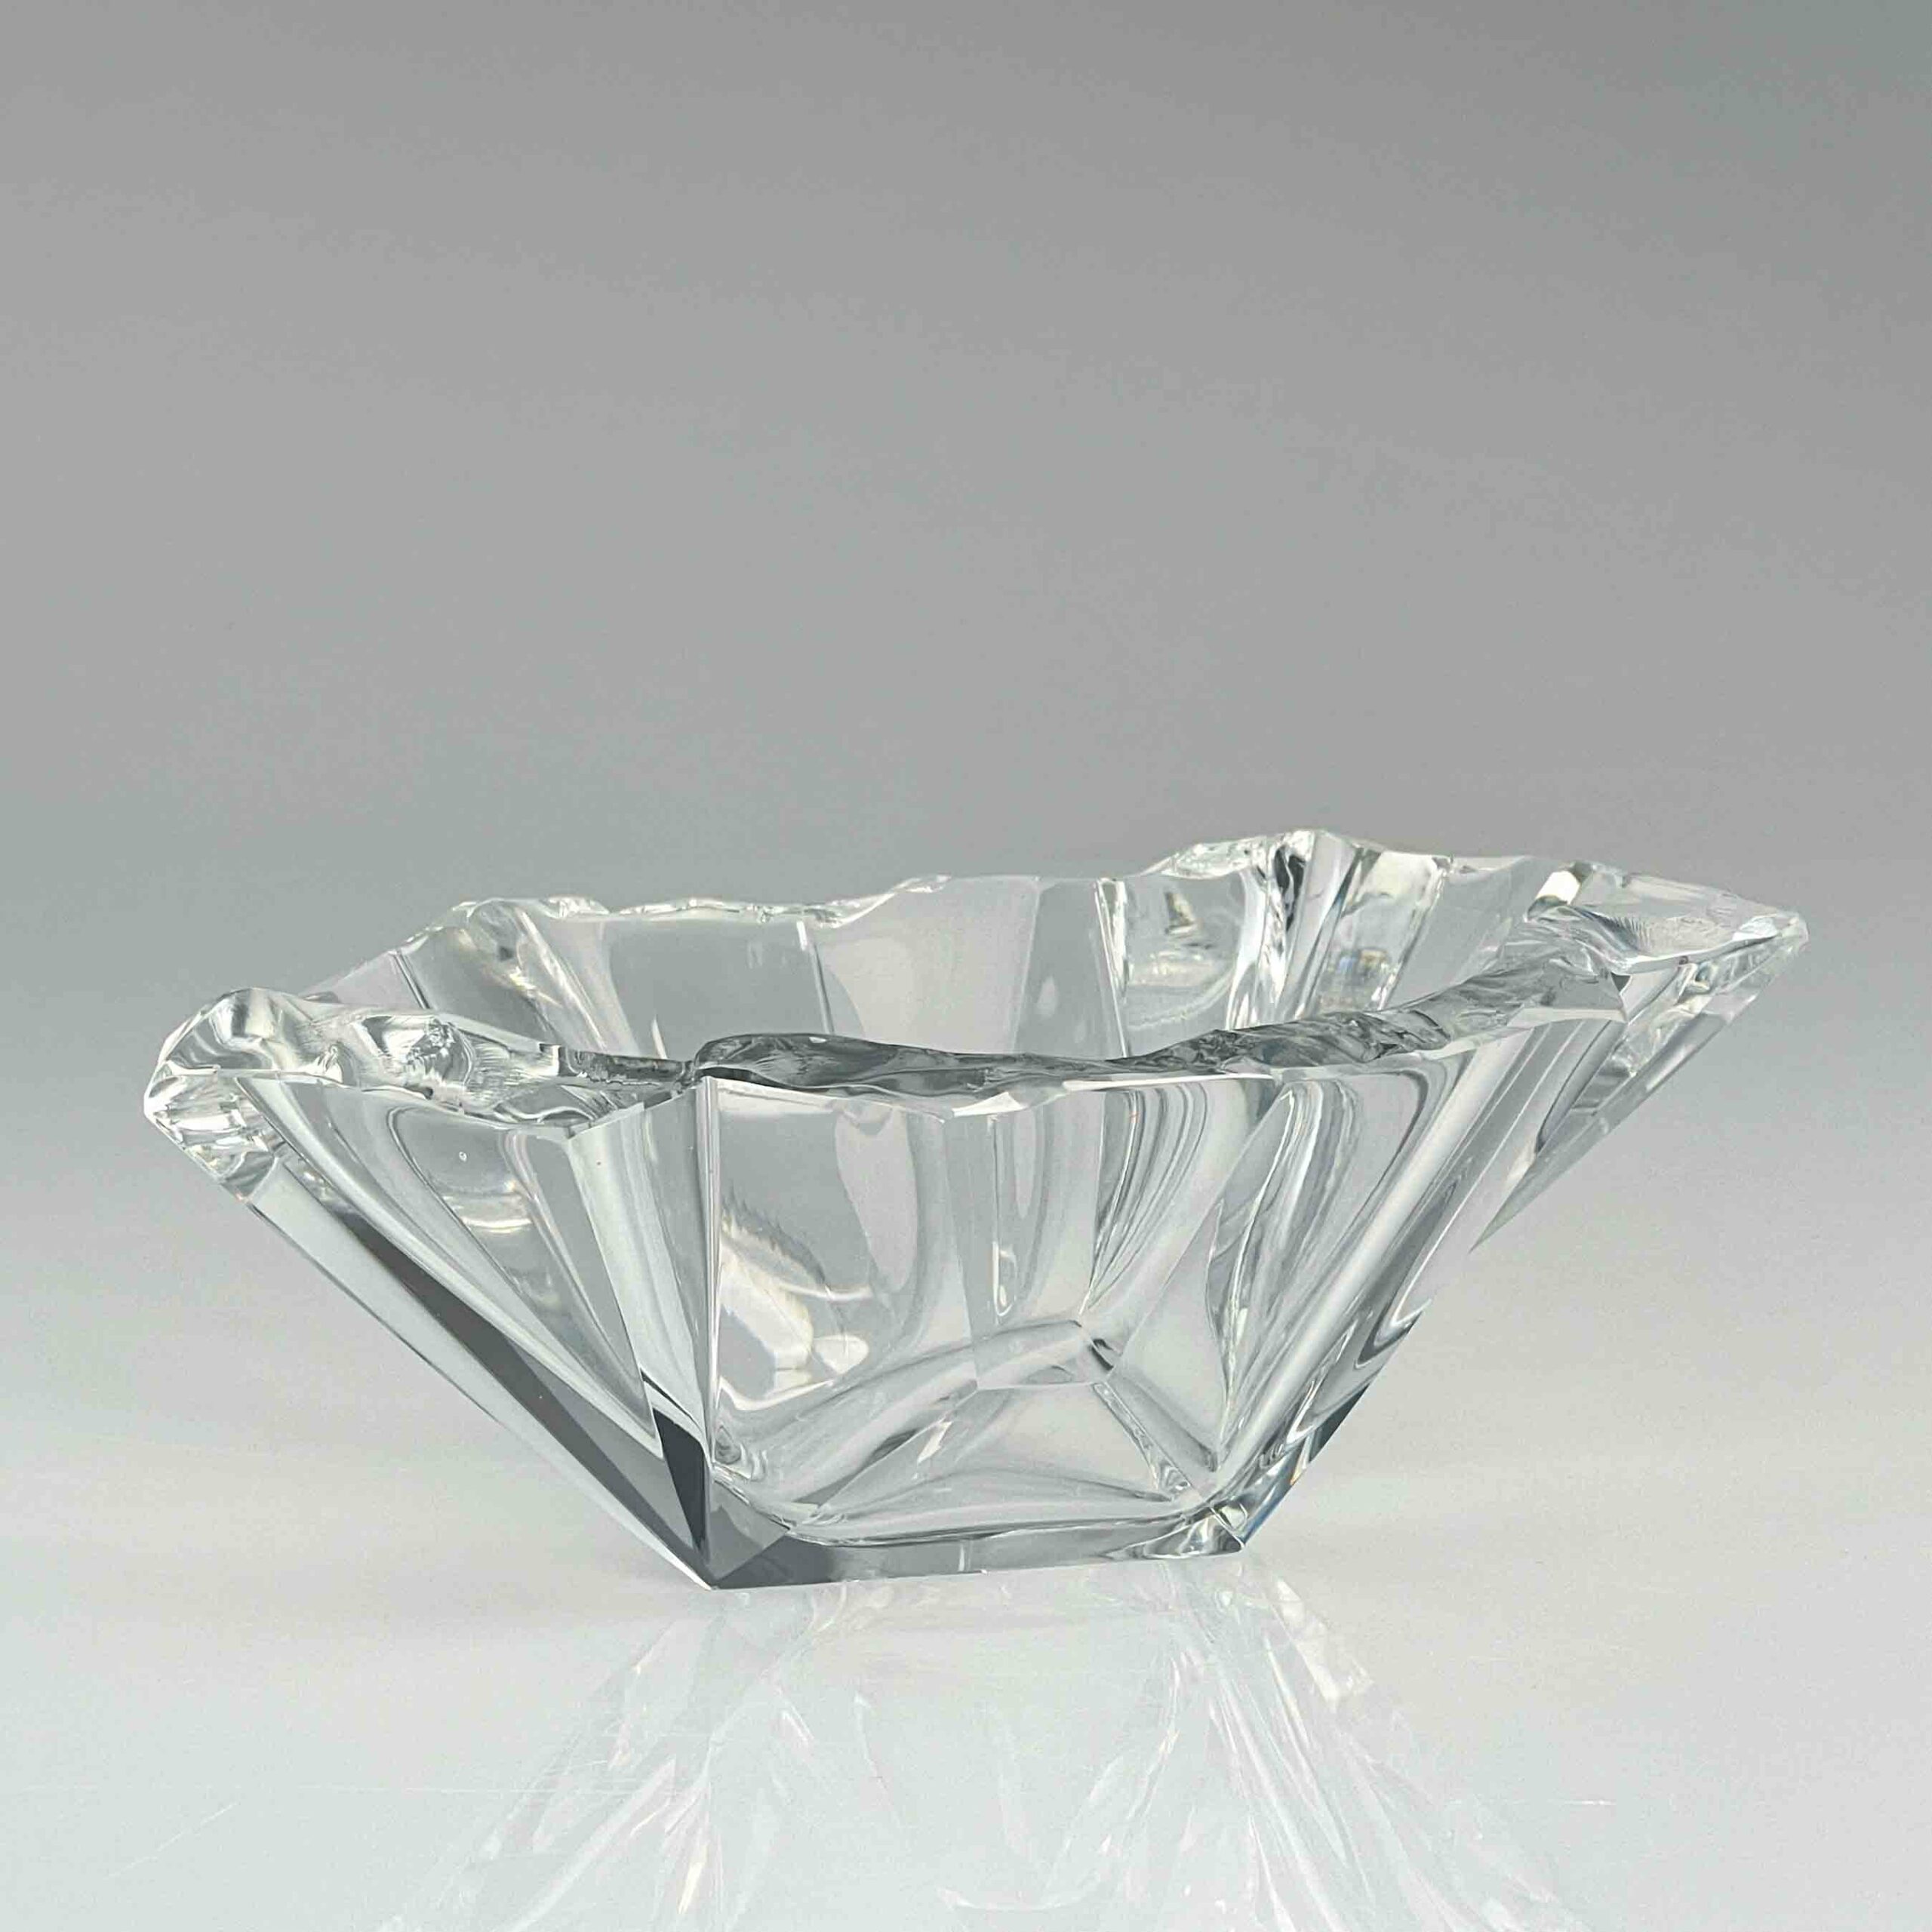 Tapio Wirkkala - Crystal Art-Object "Jaansaro" or "Iceblock", model 3847 - Iittala, Finland circa 1960